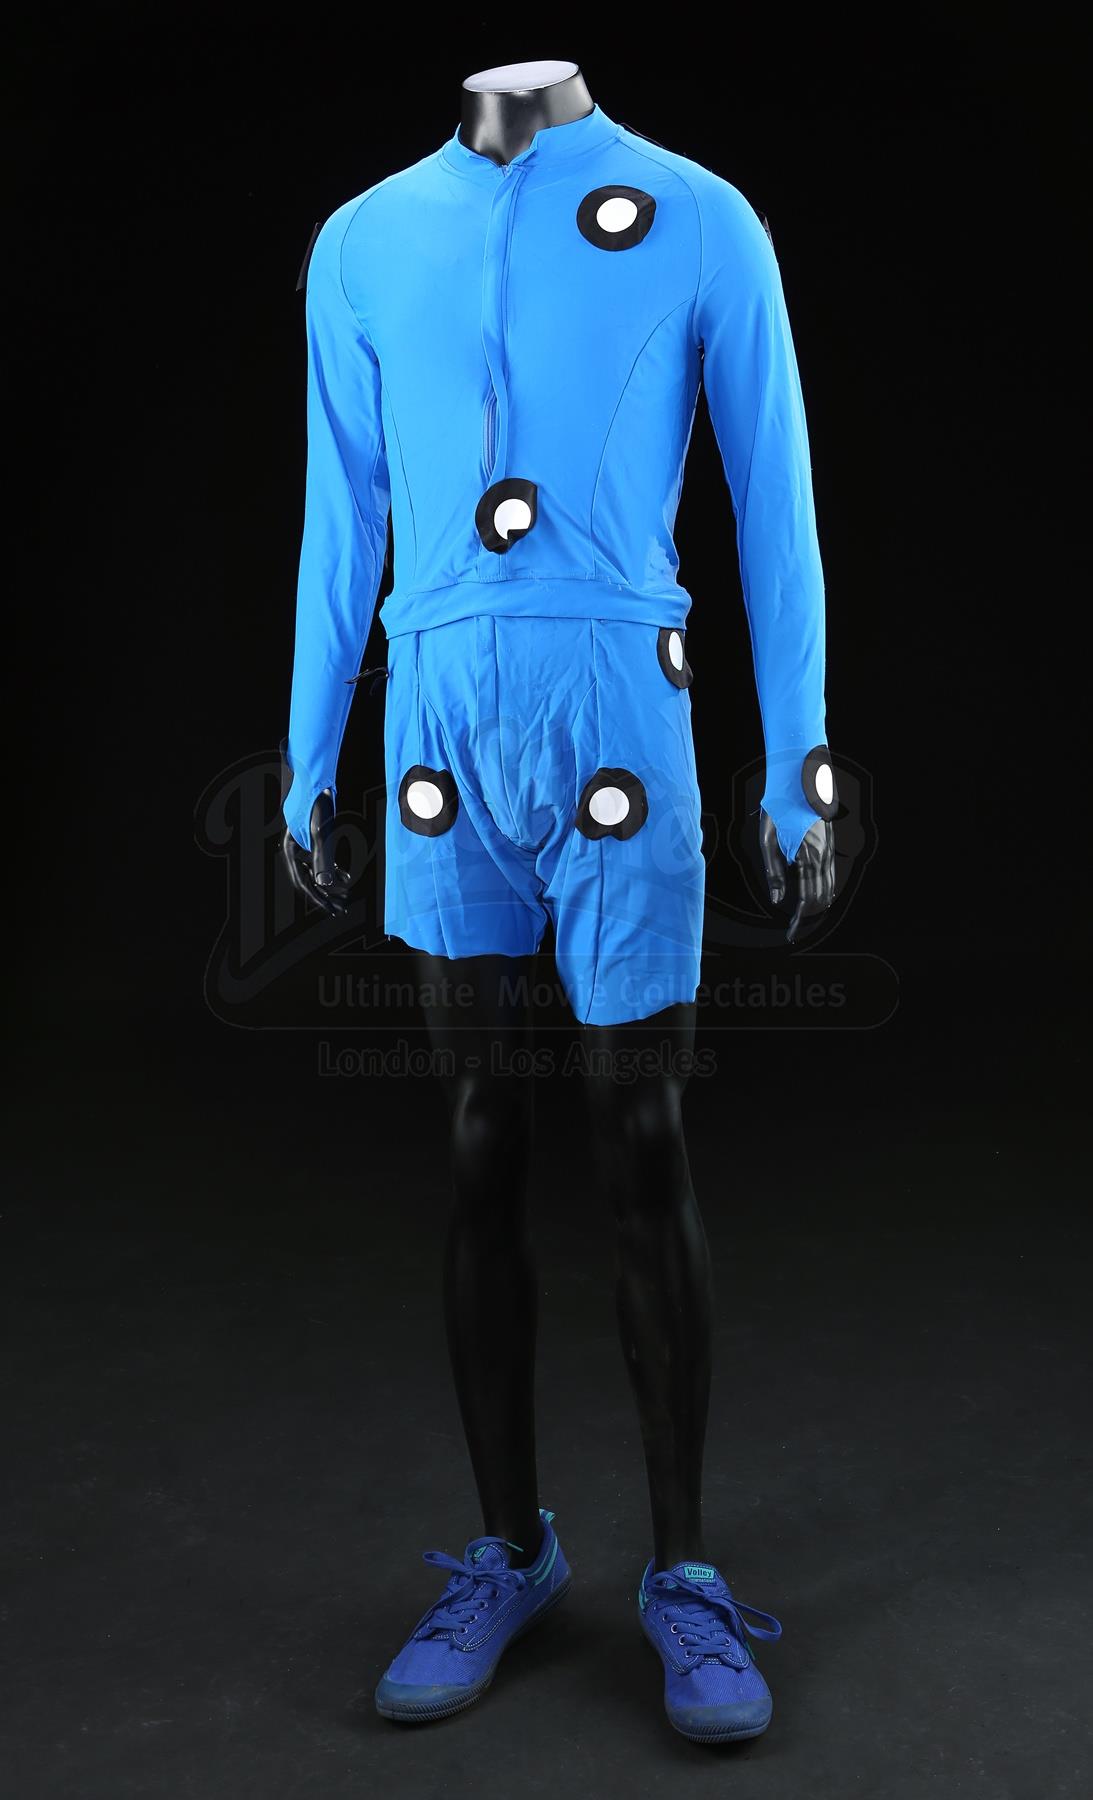 motion capture suit